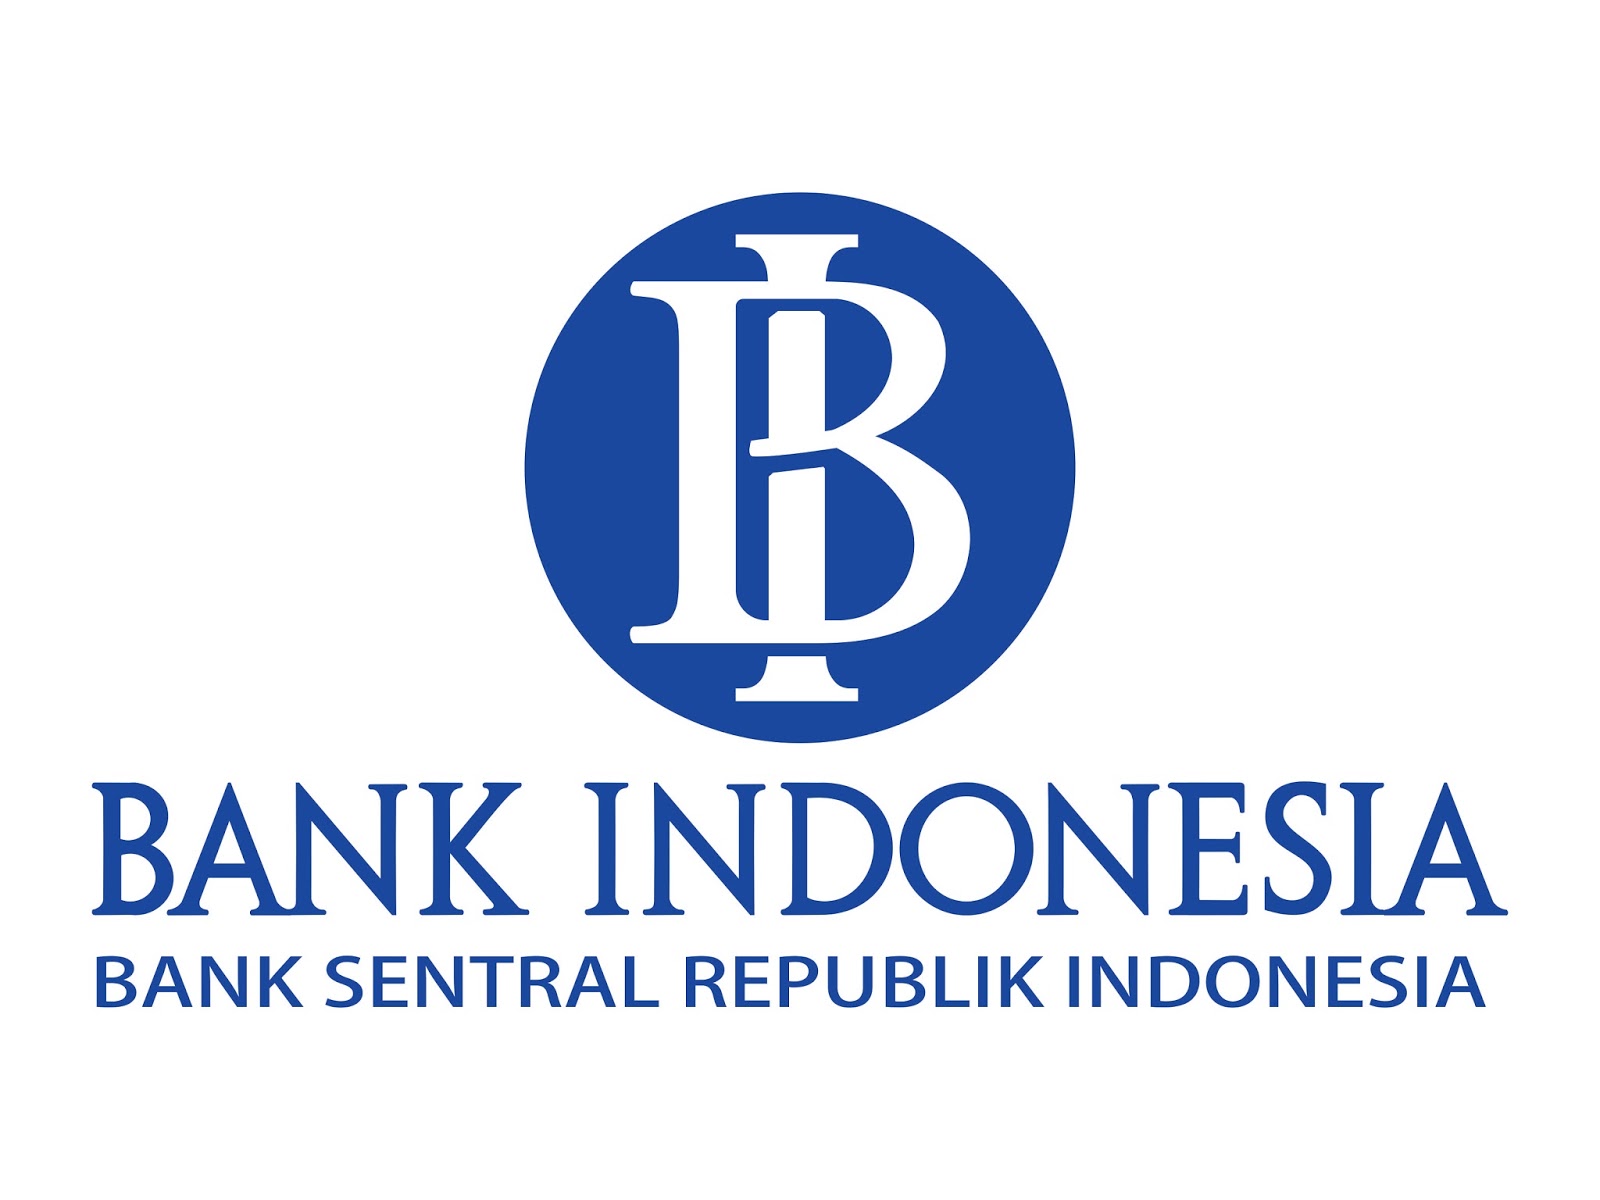 Modal asing masuk Indonesia 5,05 triliun rupiah dalam sepekan